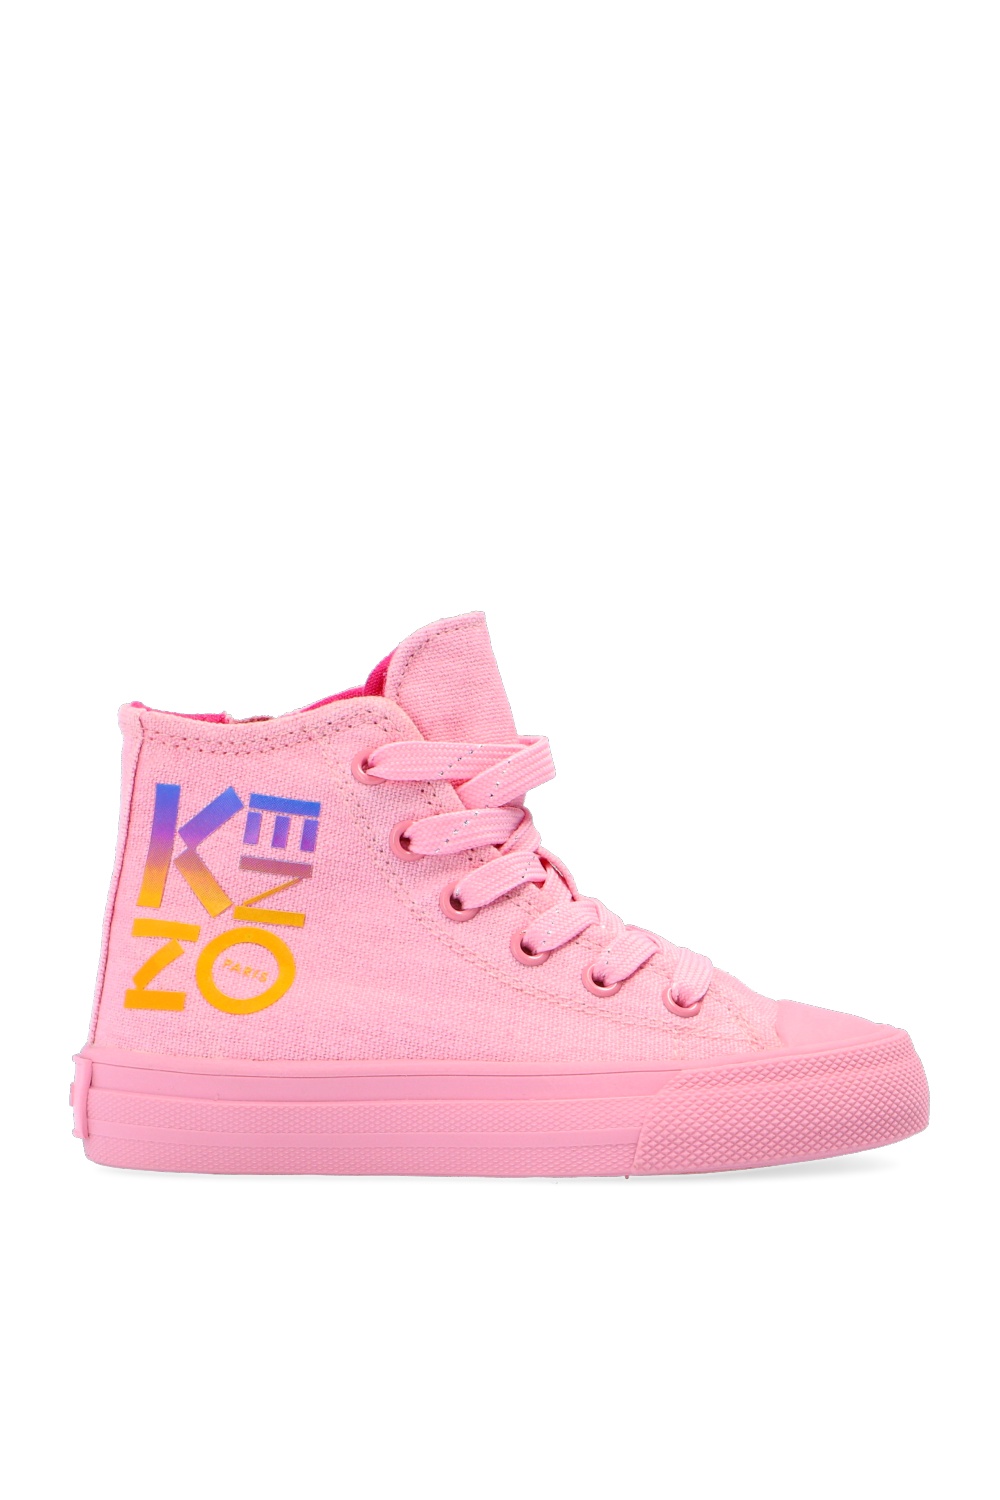 kenzo shoe size